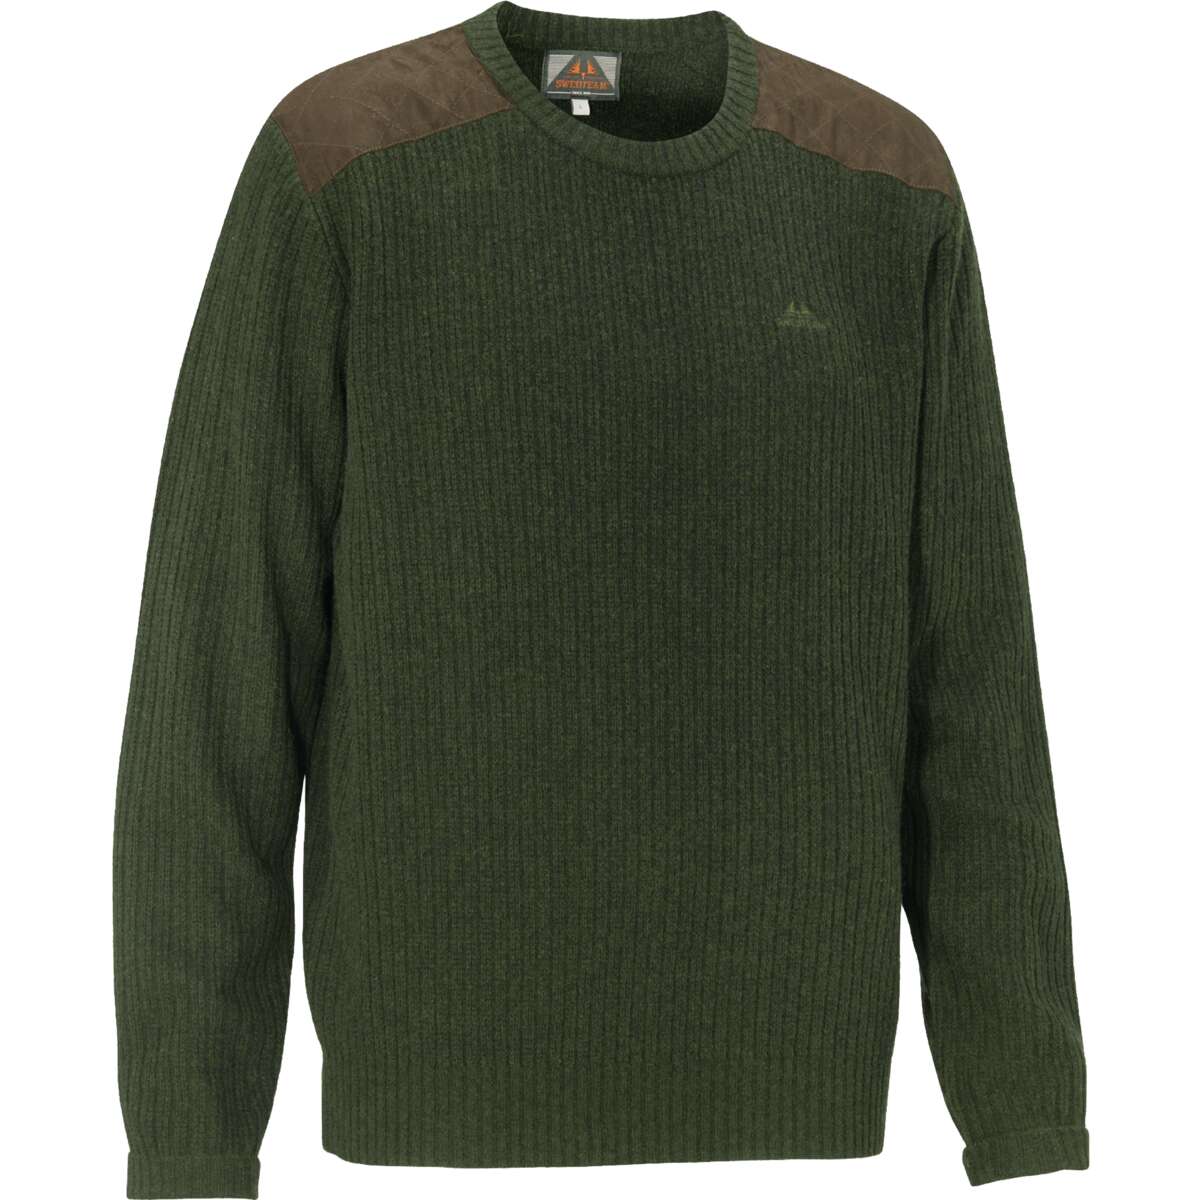 Derek Sweater Loden Green - 3XL thumbnail